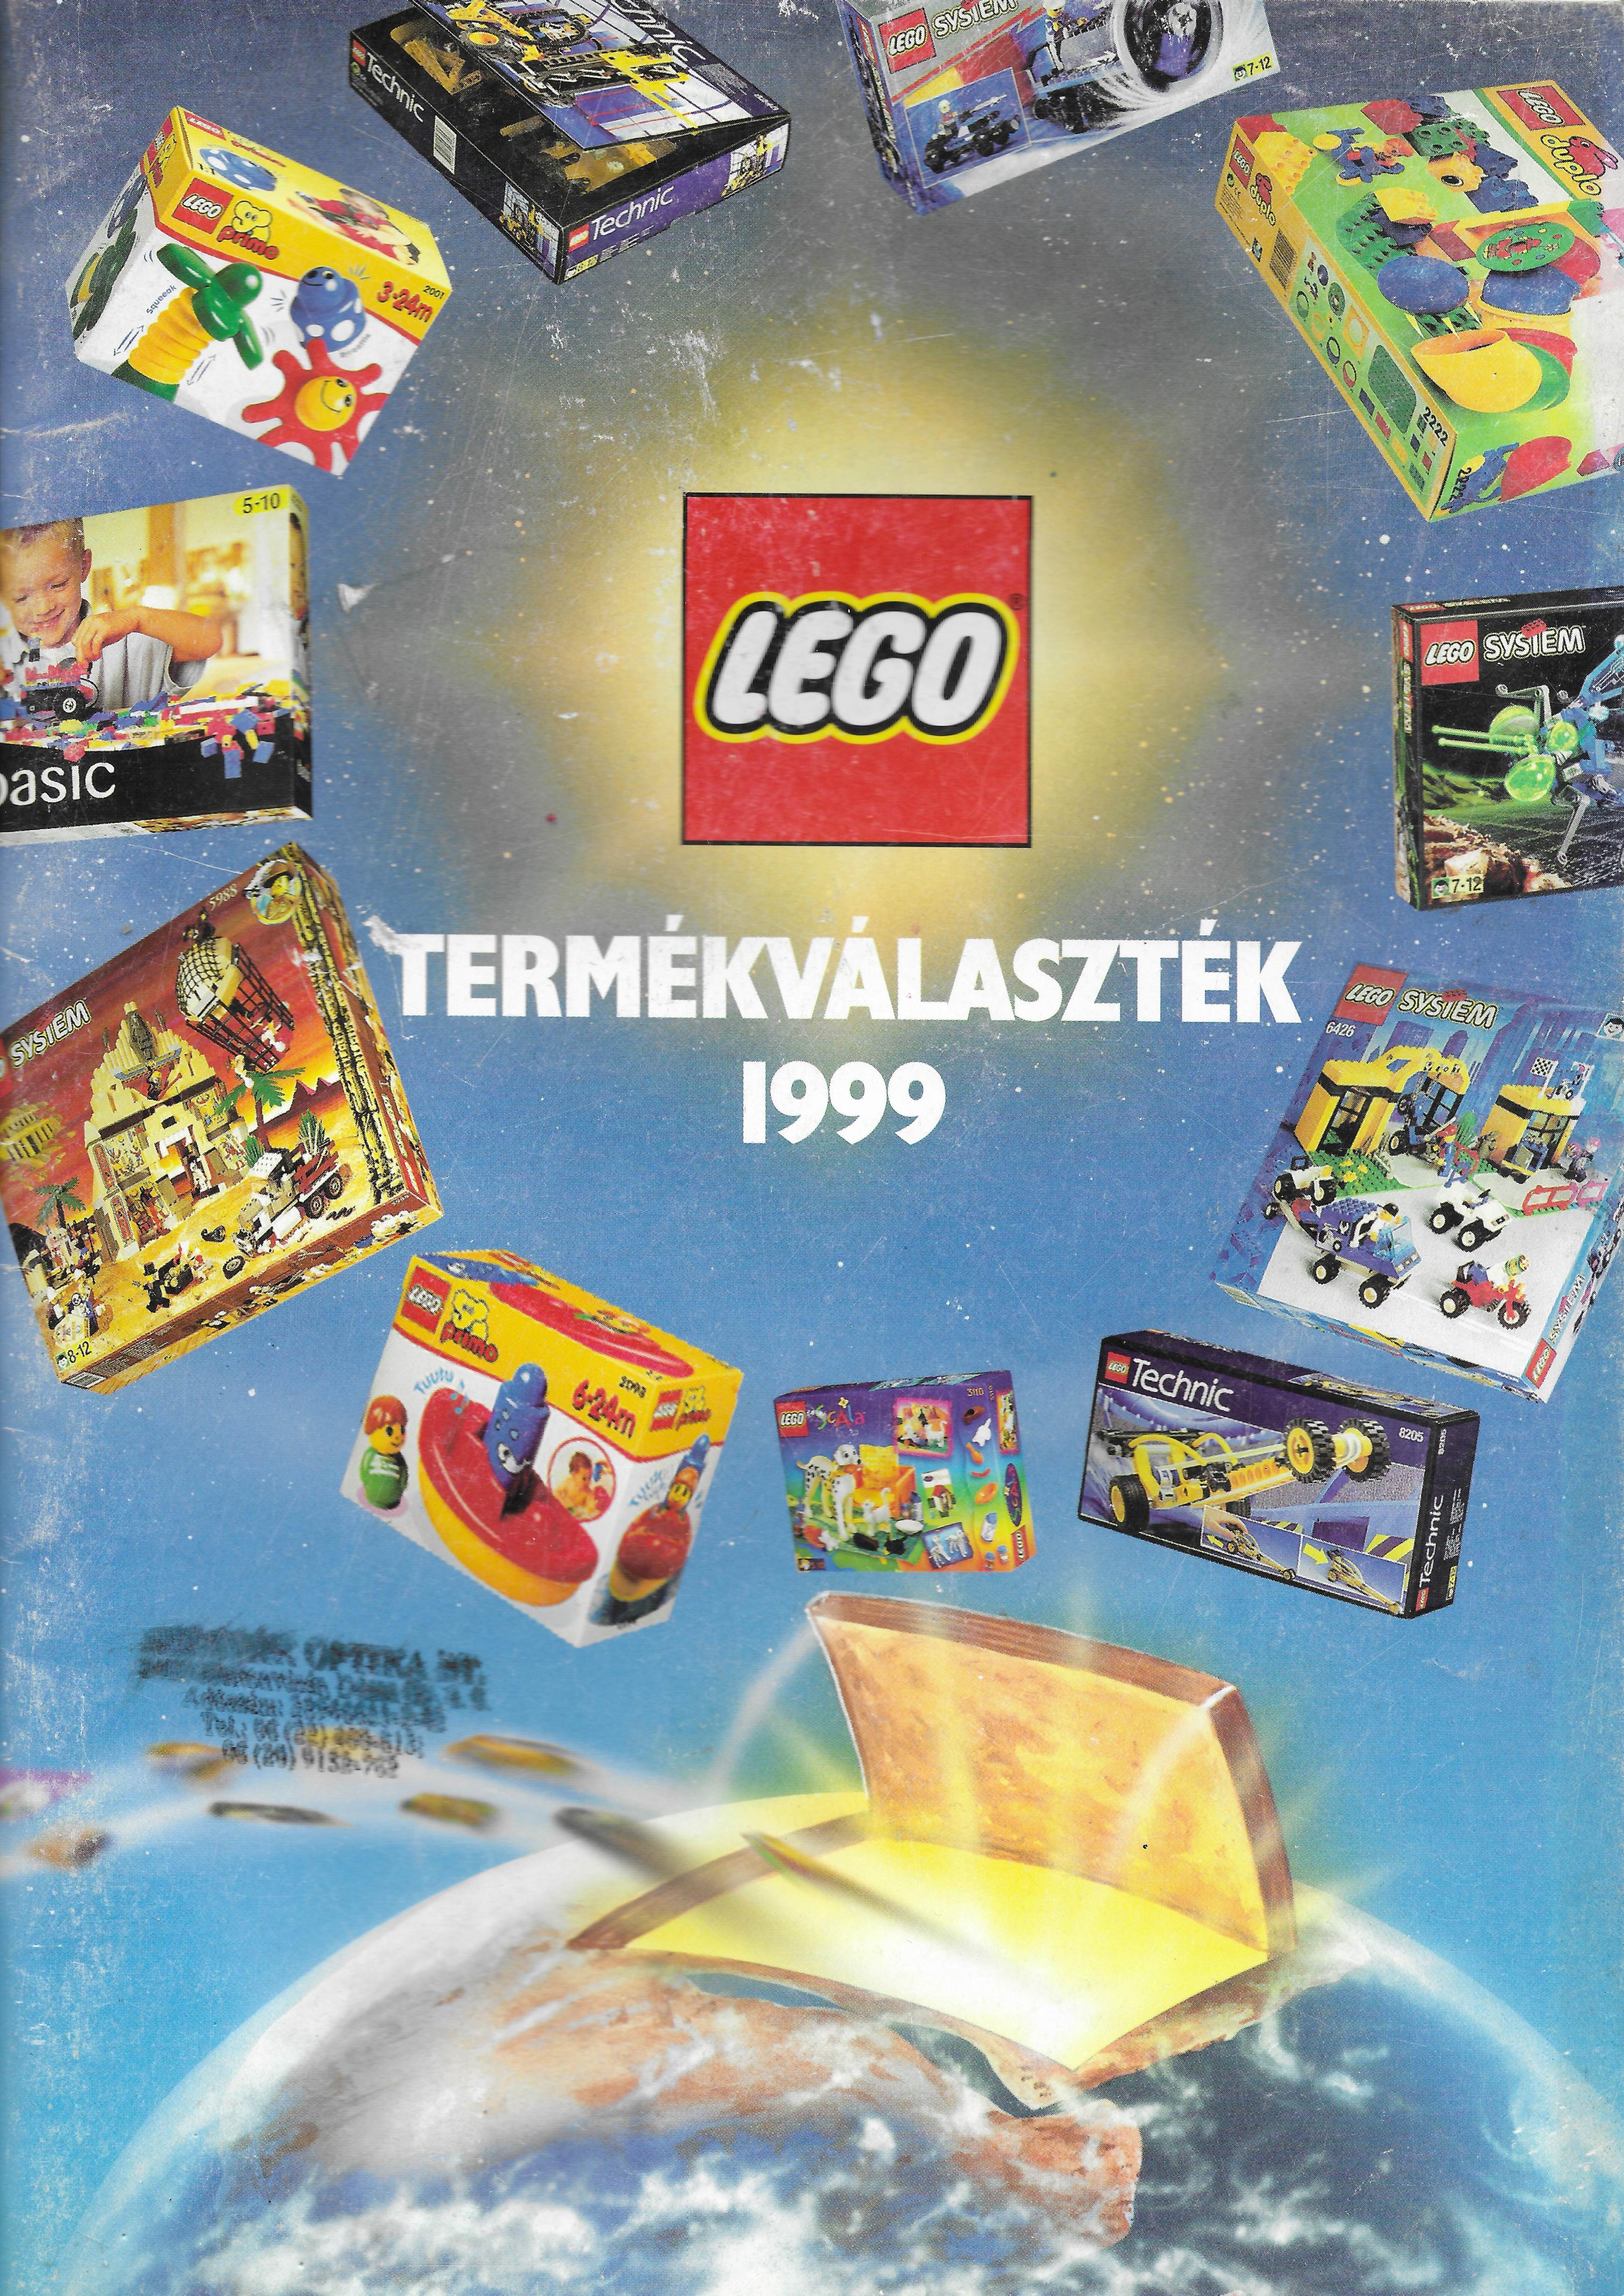 Magyar kereskedőknek szóló Lego katalógus 1999-ből